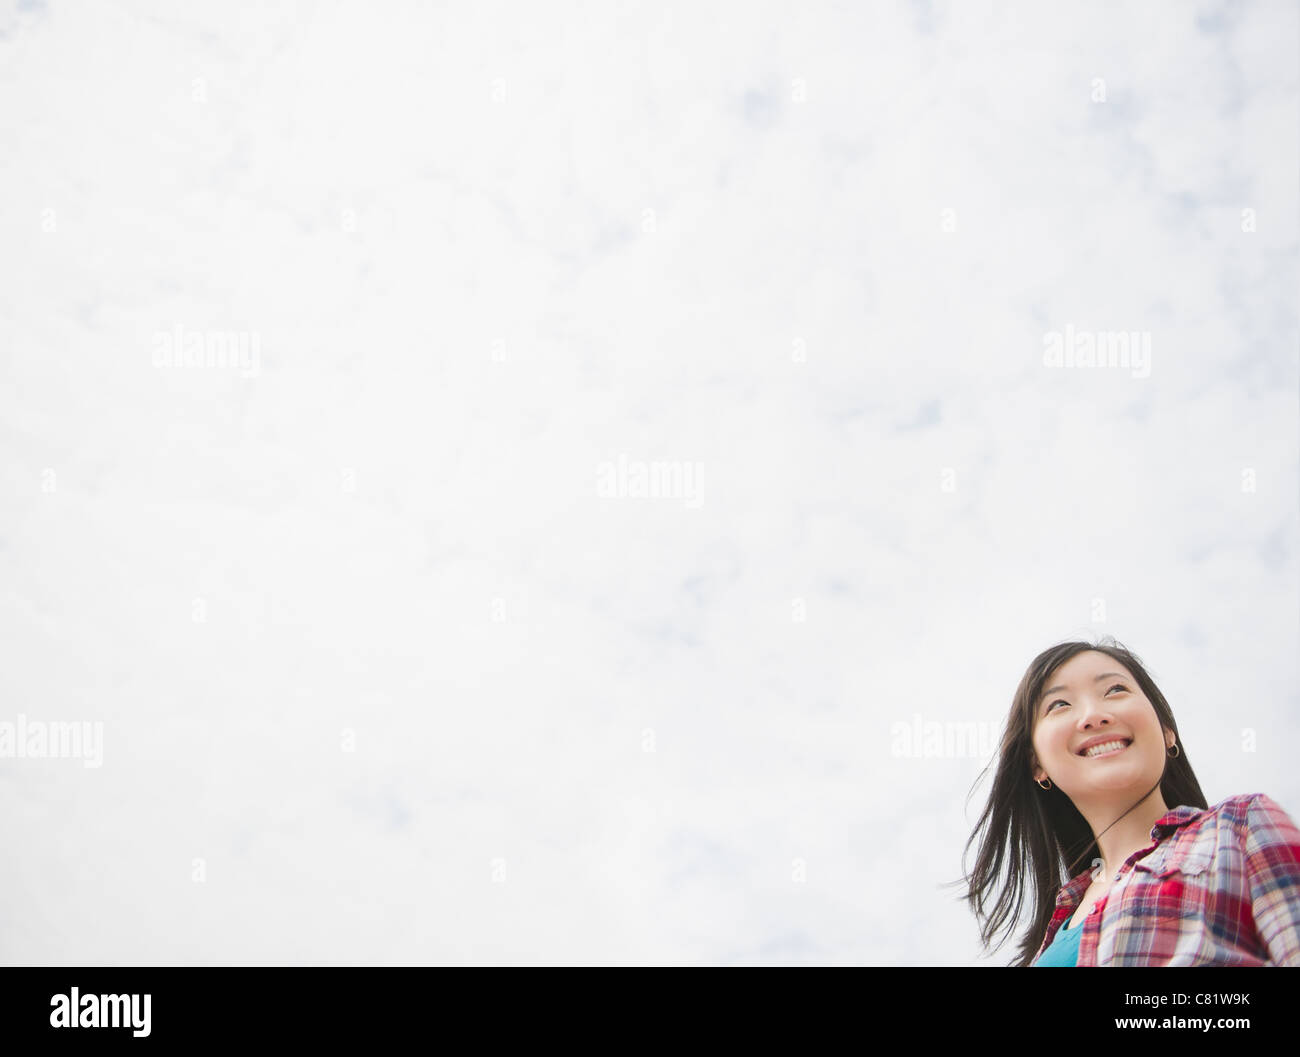 Smiling Korean woman outdoors Stock Photo